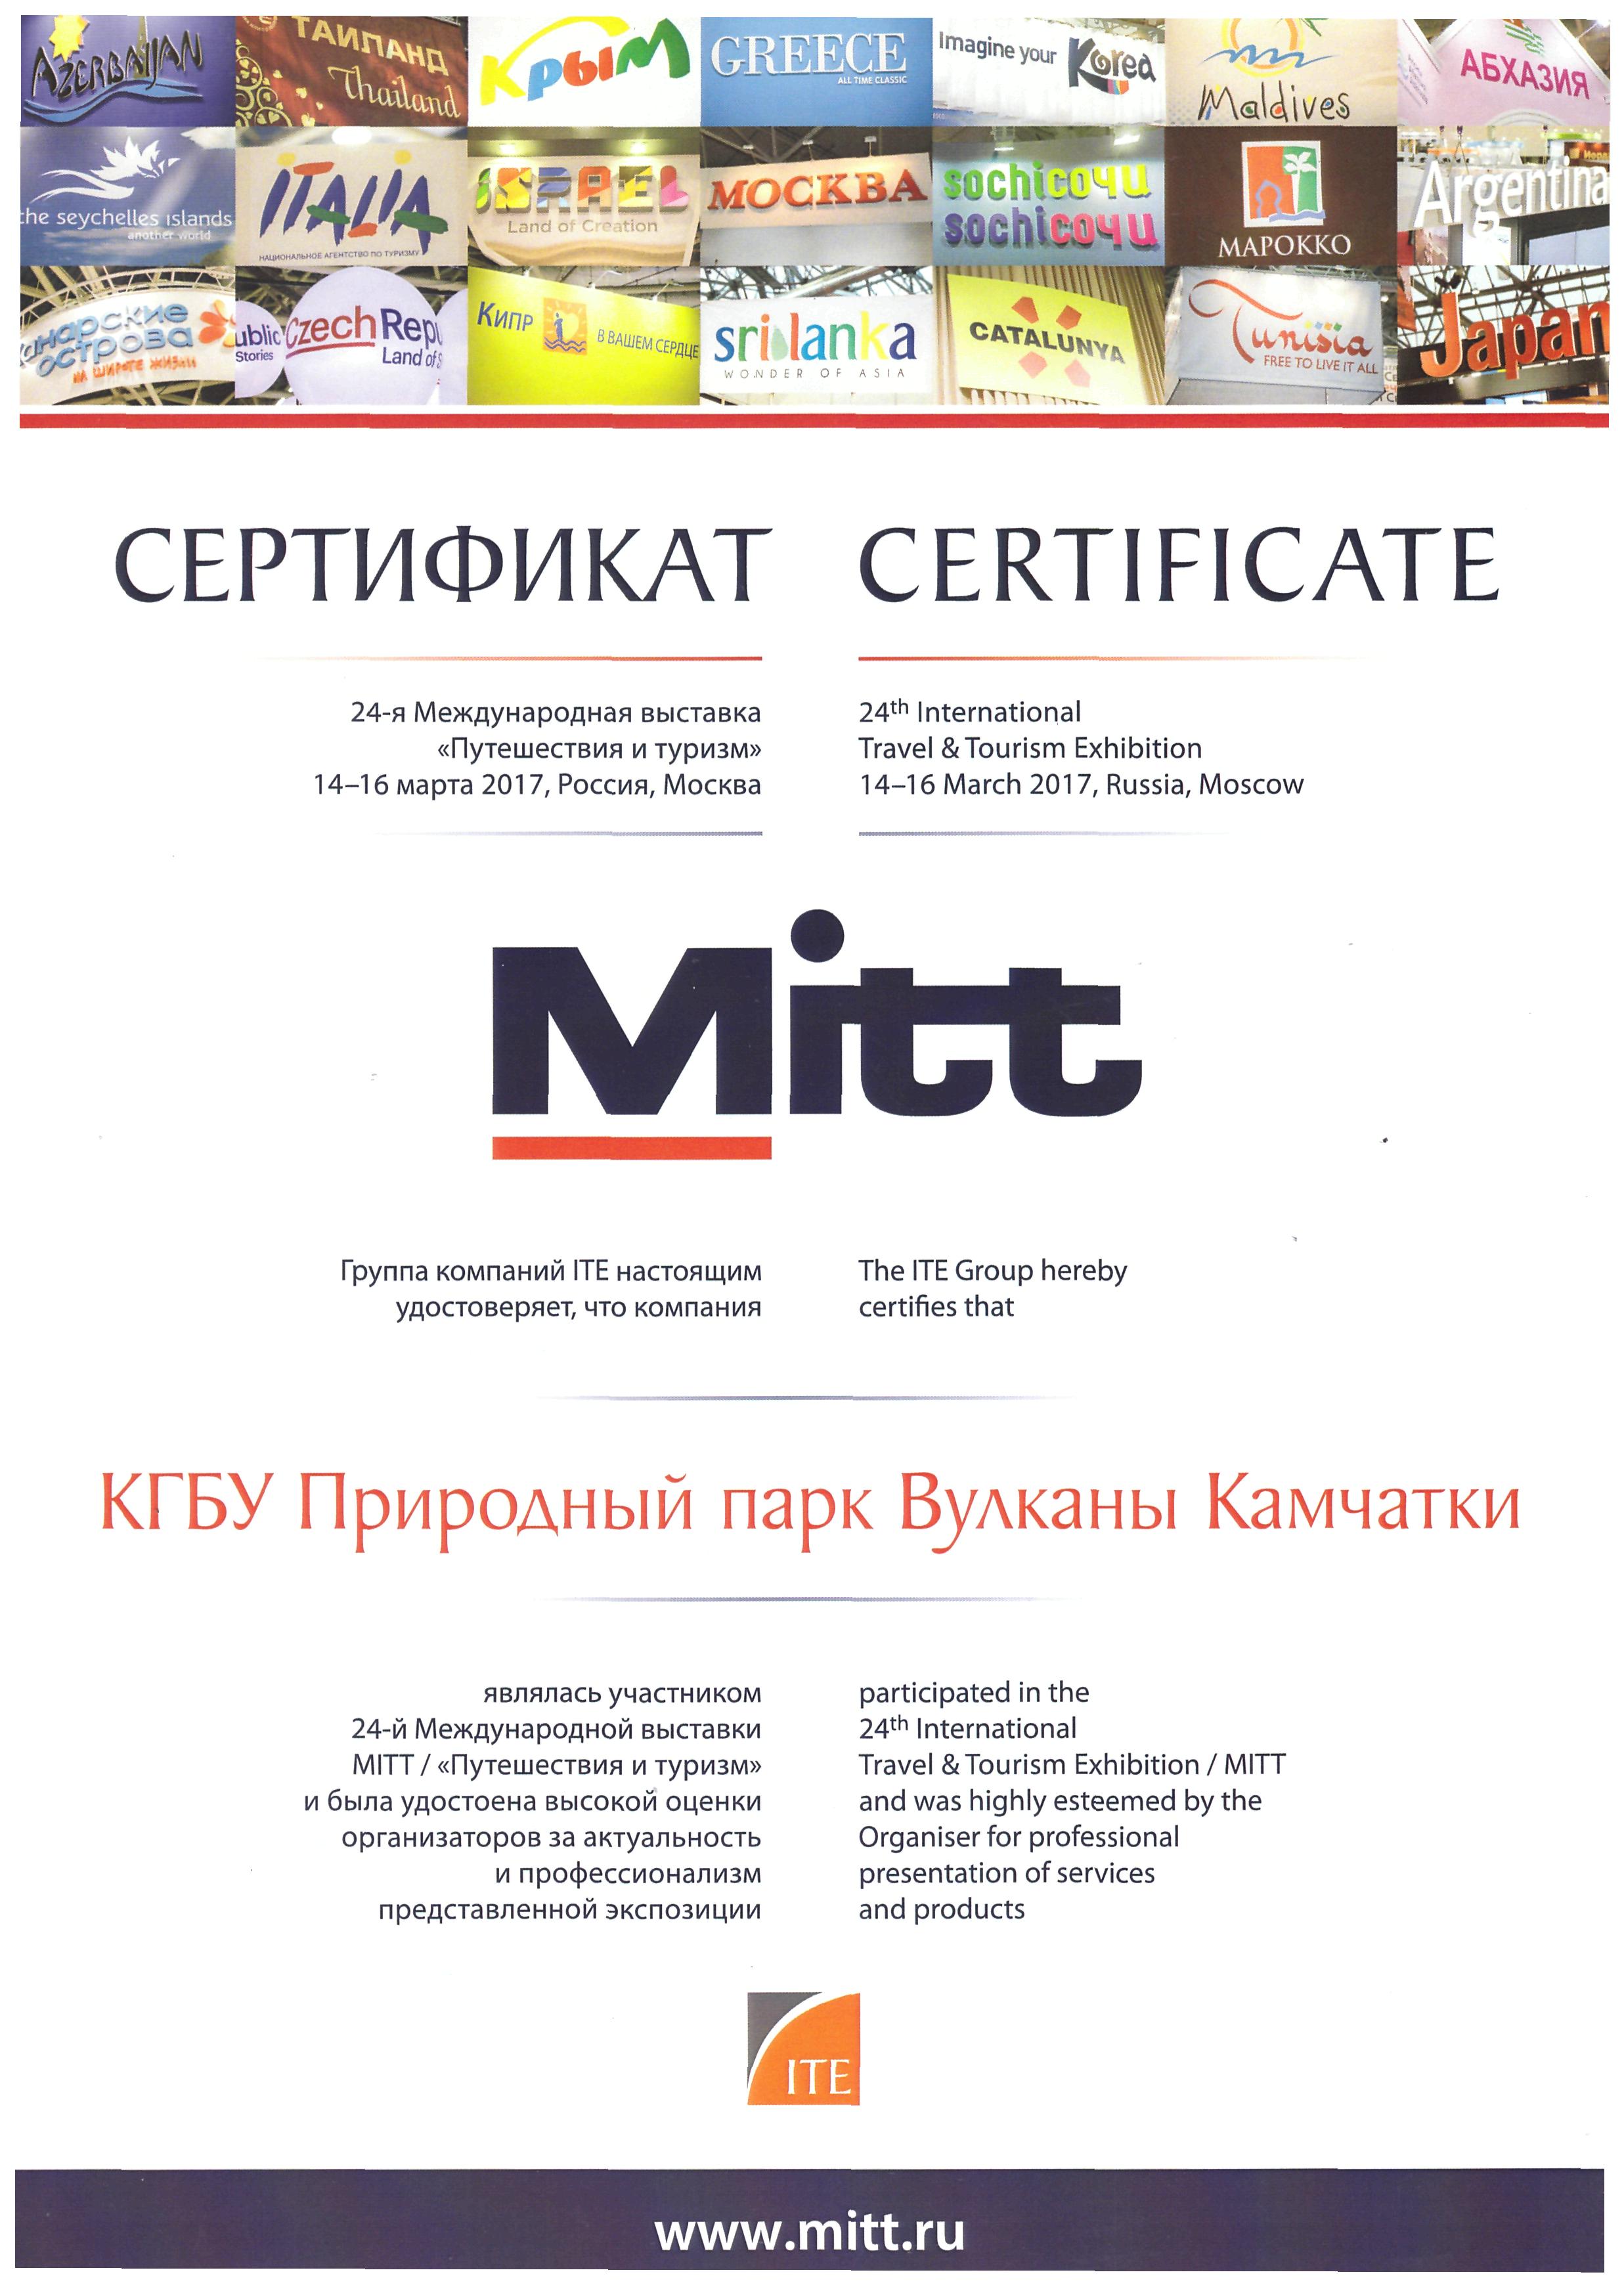 Сертификат участника 24-й международной выставки MITT, 2017 год